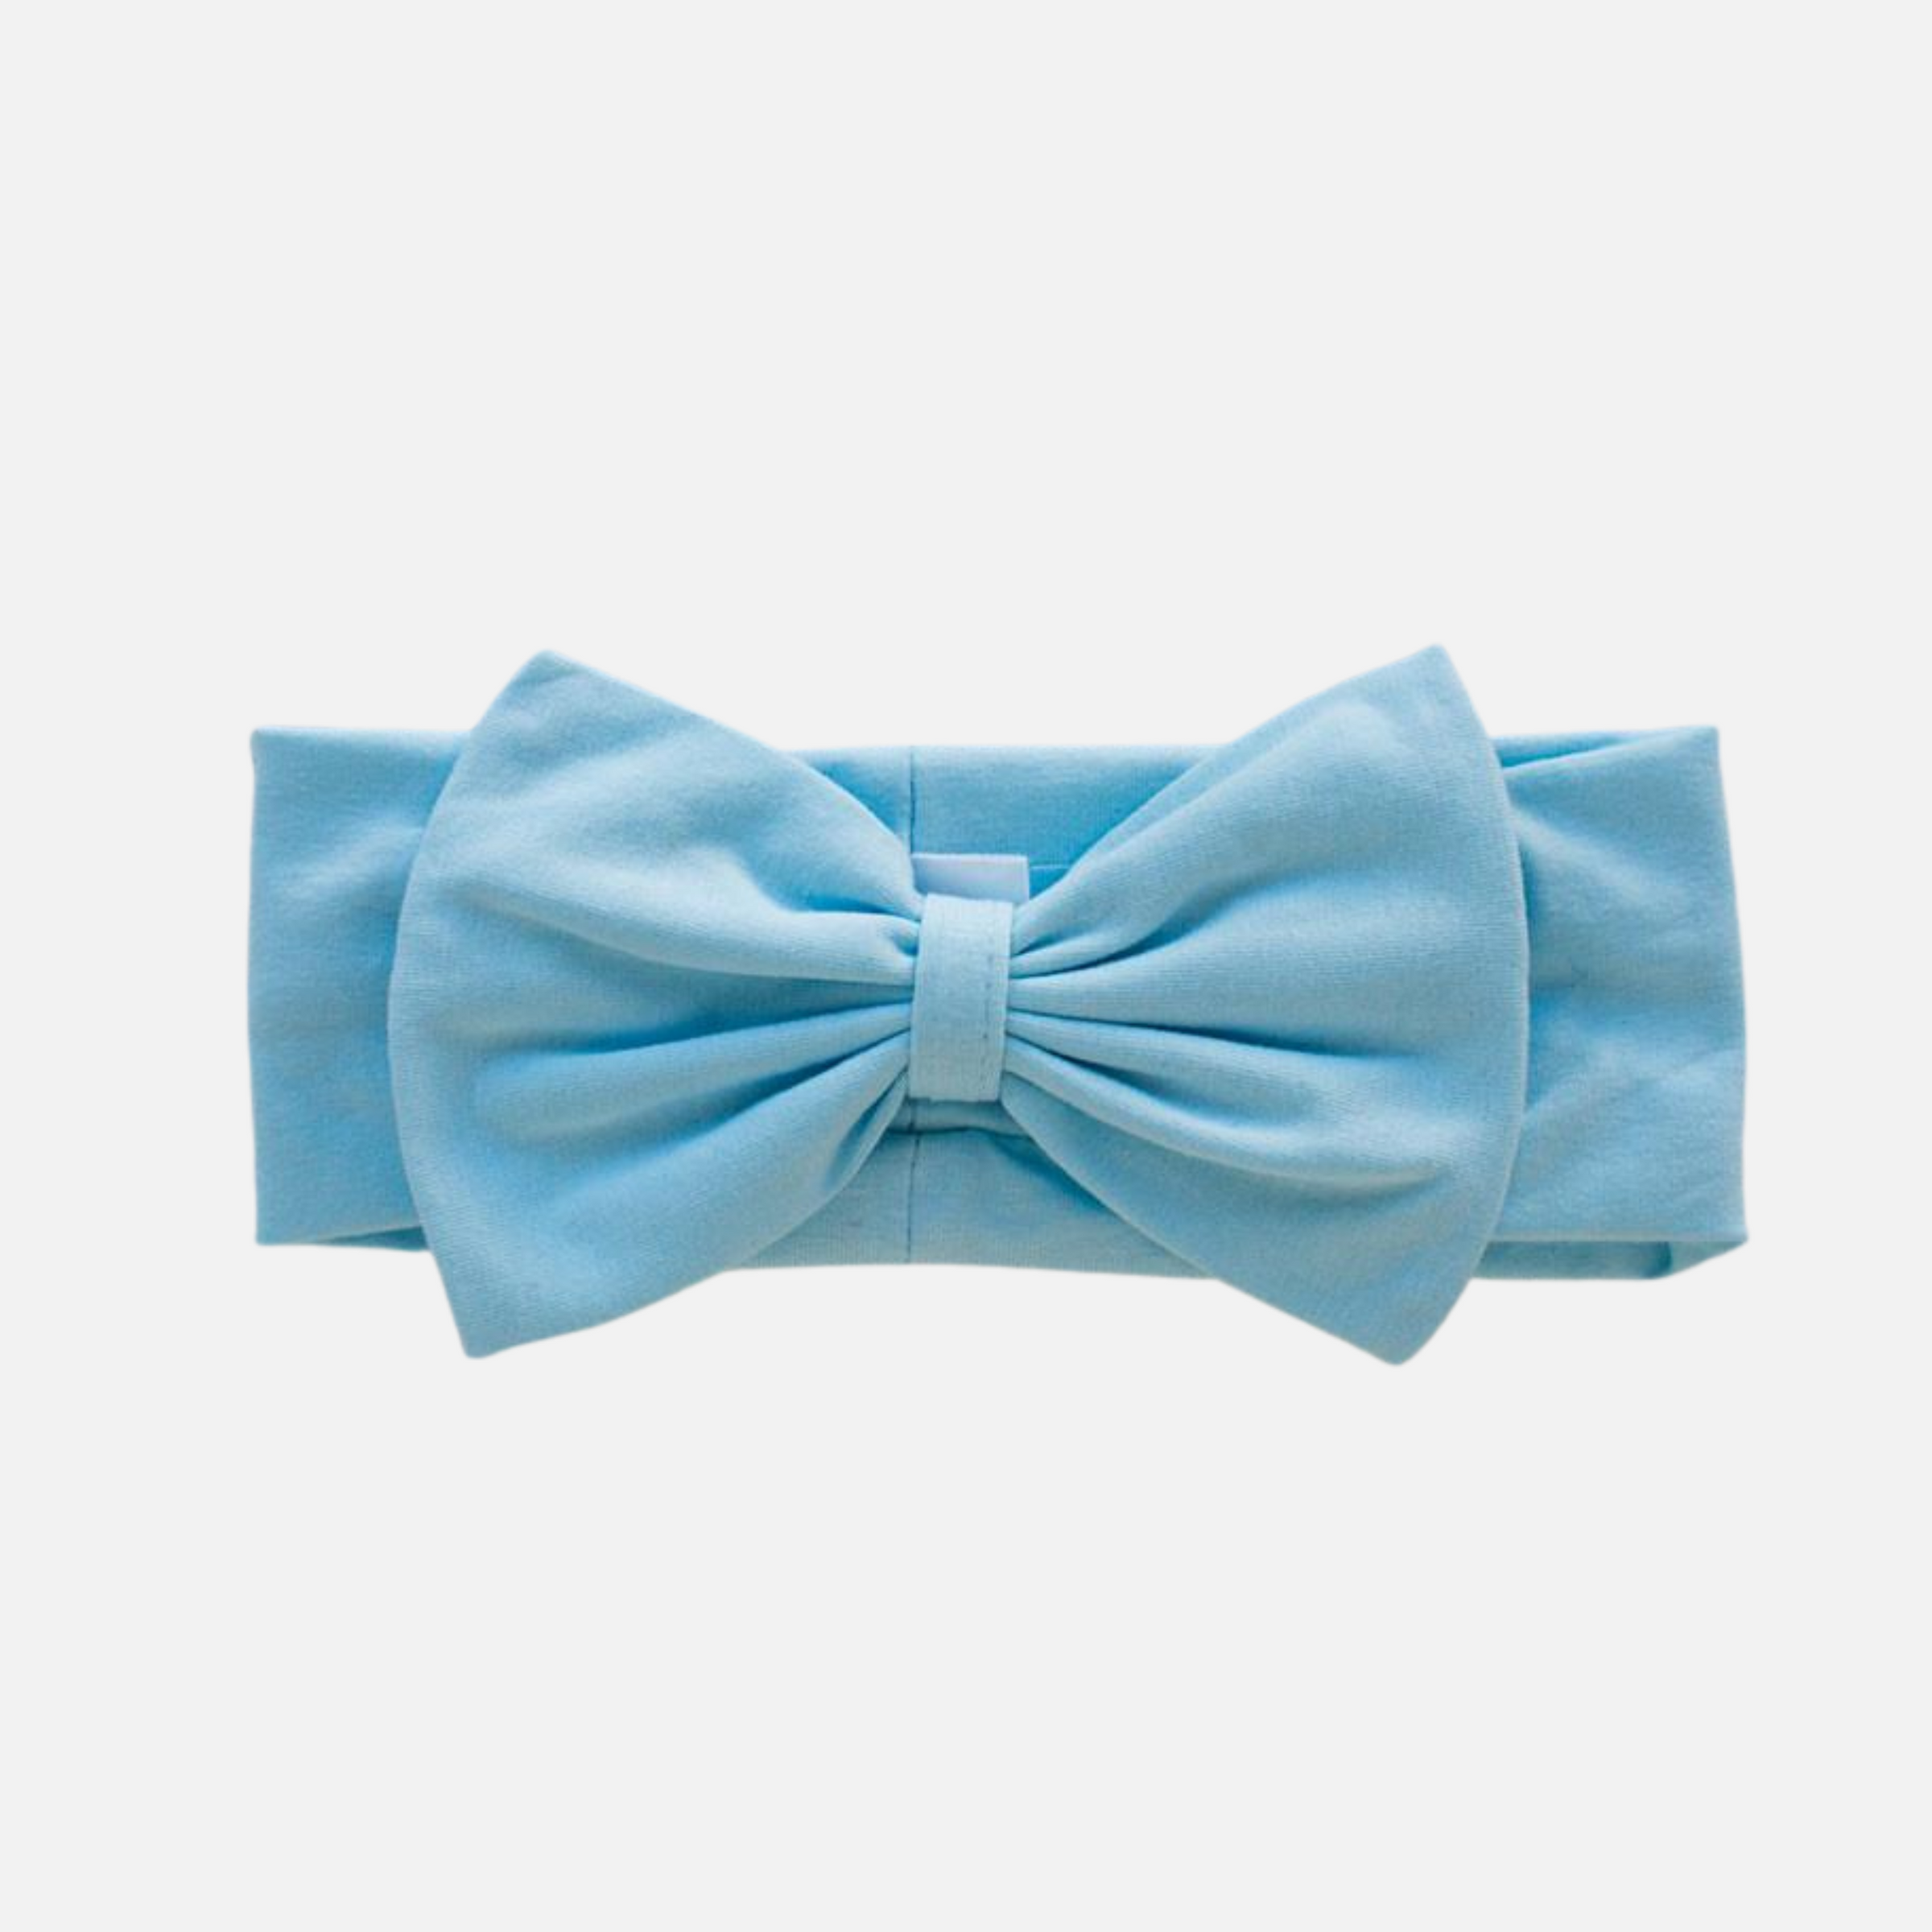 Stretchy Bow Headband - Baby Blue